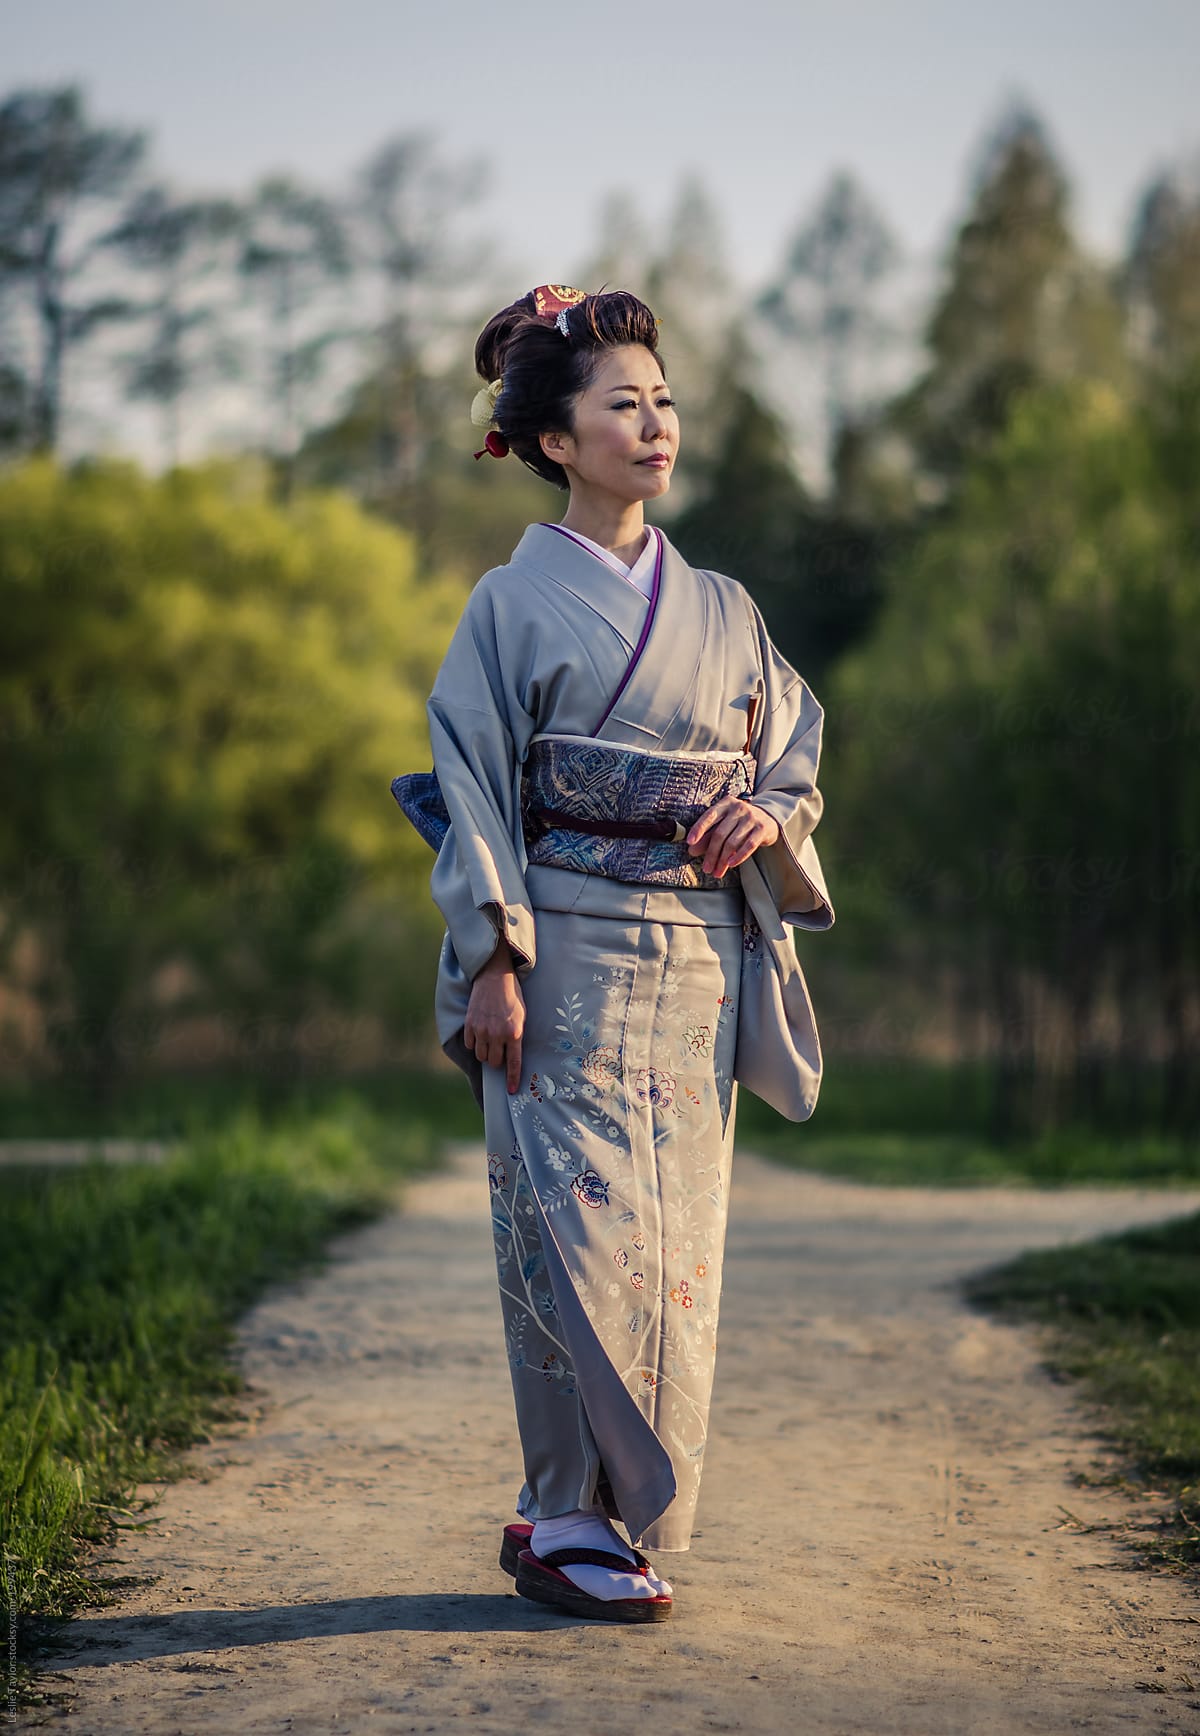 Woman In Kimono On Dirt Path